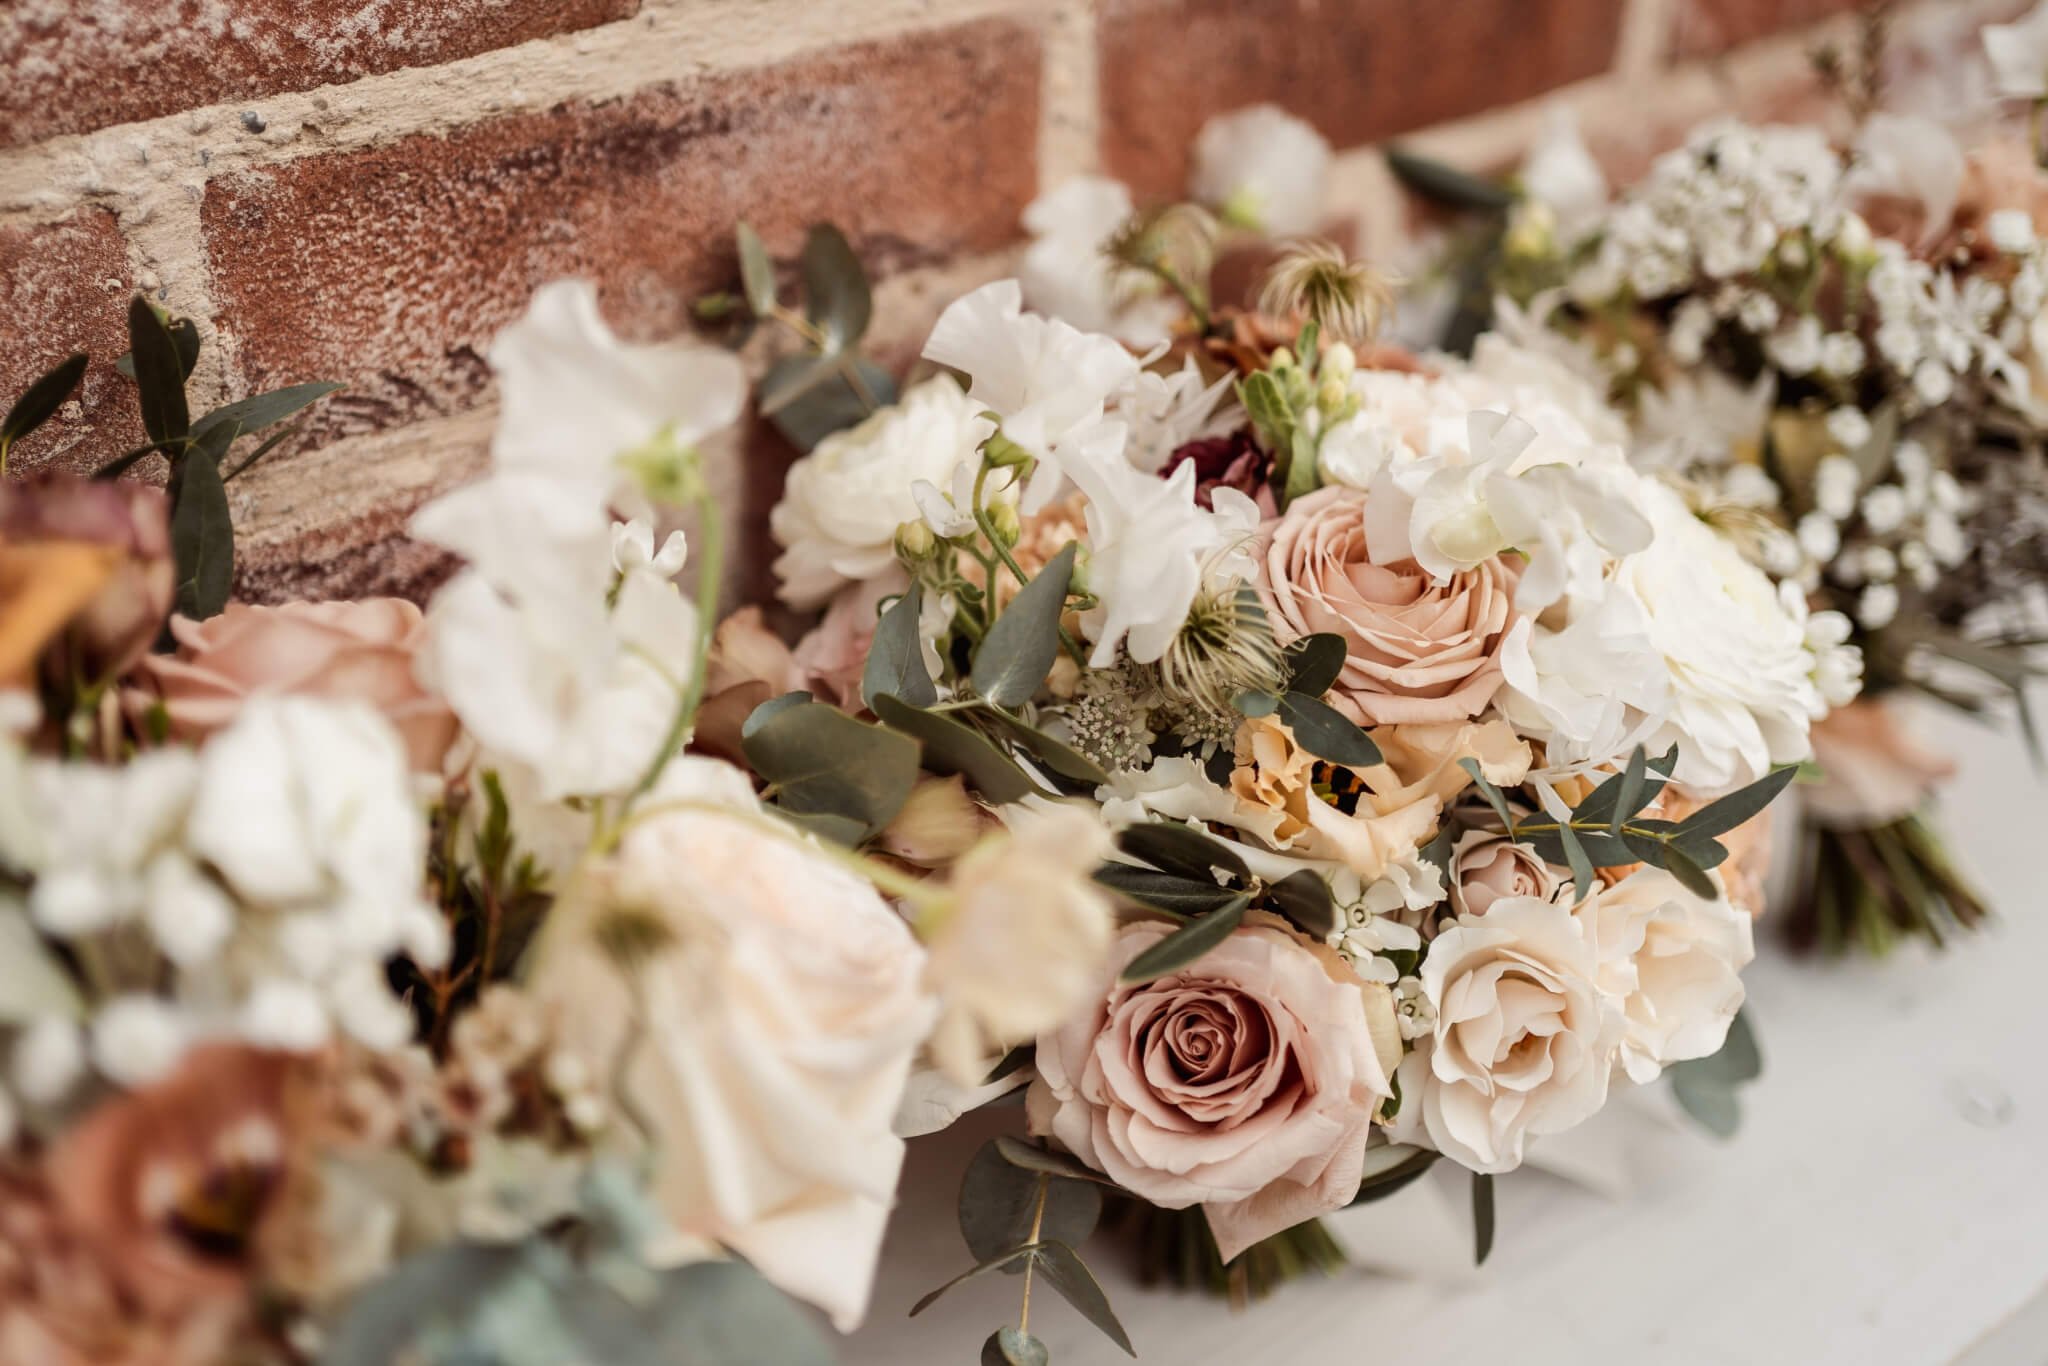 Luxury flower wedding bouquets for autumn winter wedding Satffordshire